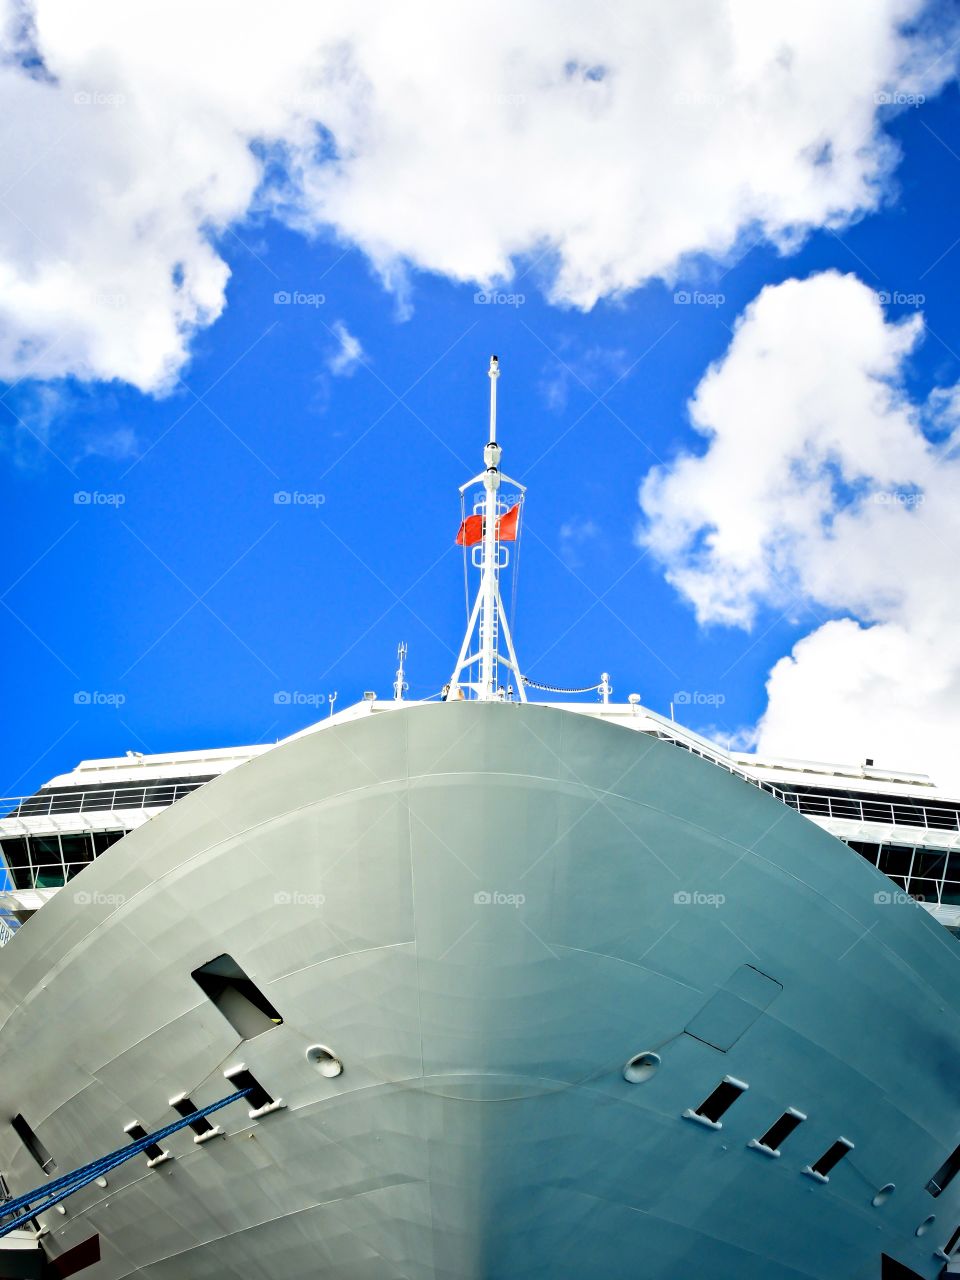 The hull of a cruise ship. The hull of a cruise ship